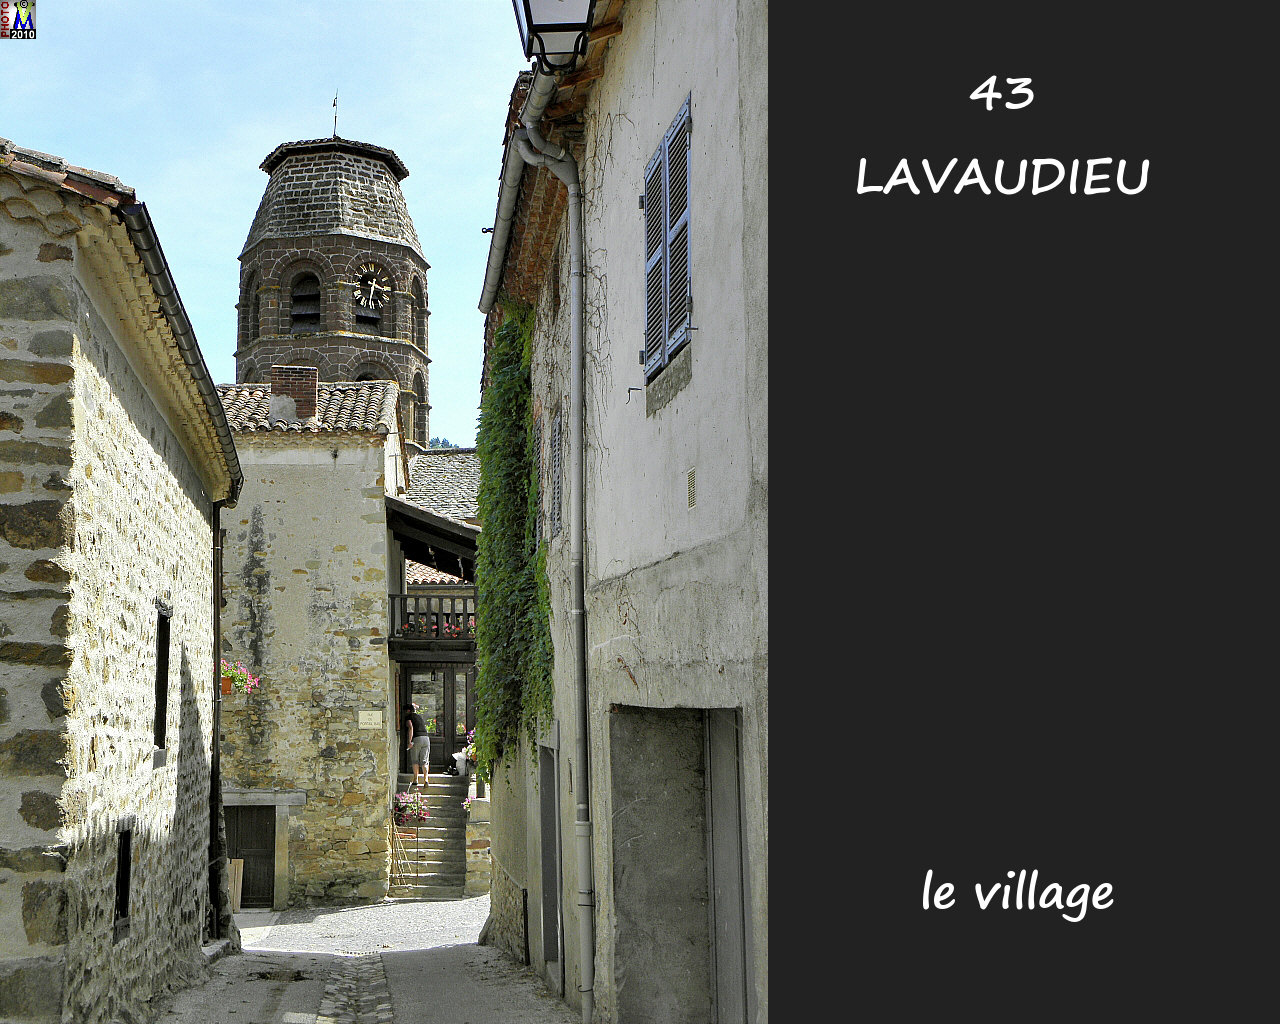 43LAVAUDIEU_village_208.jpg